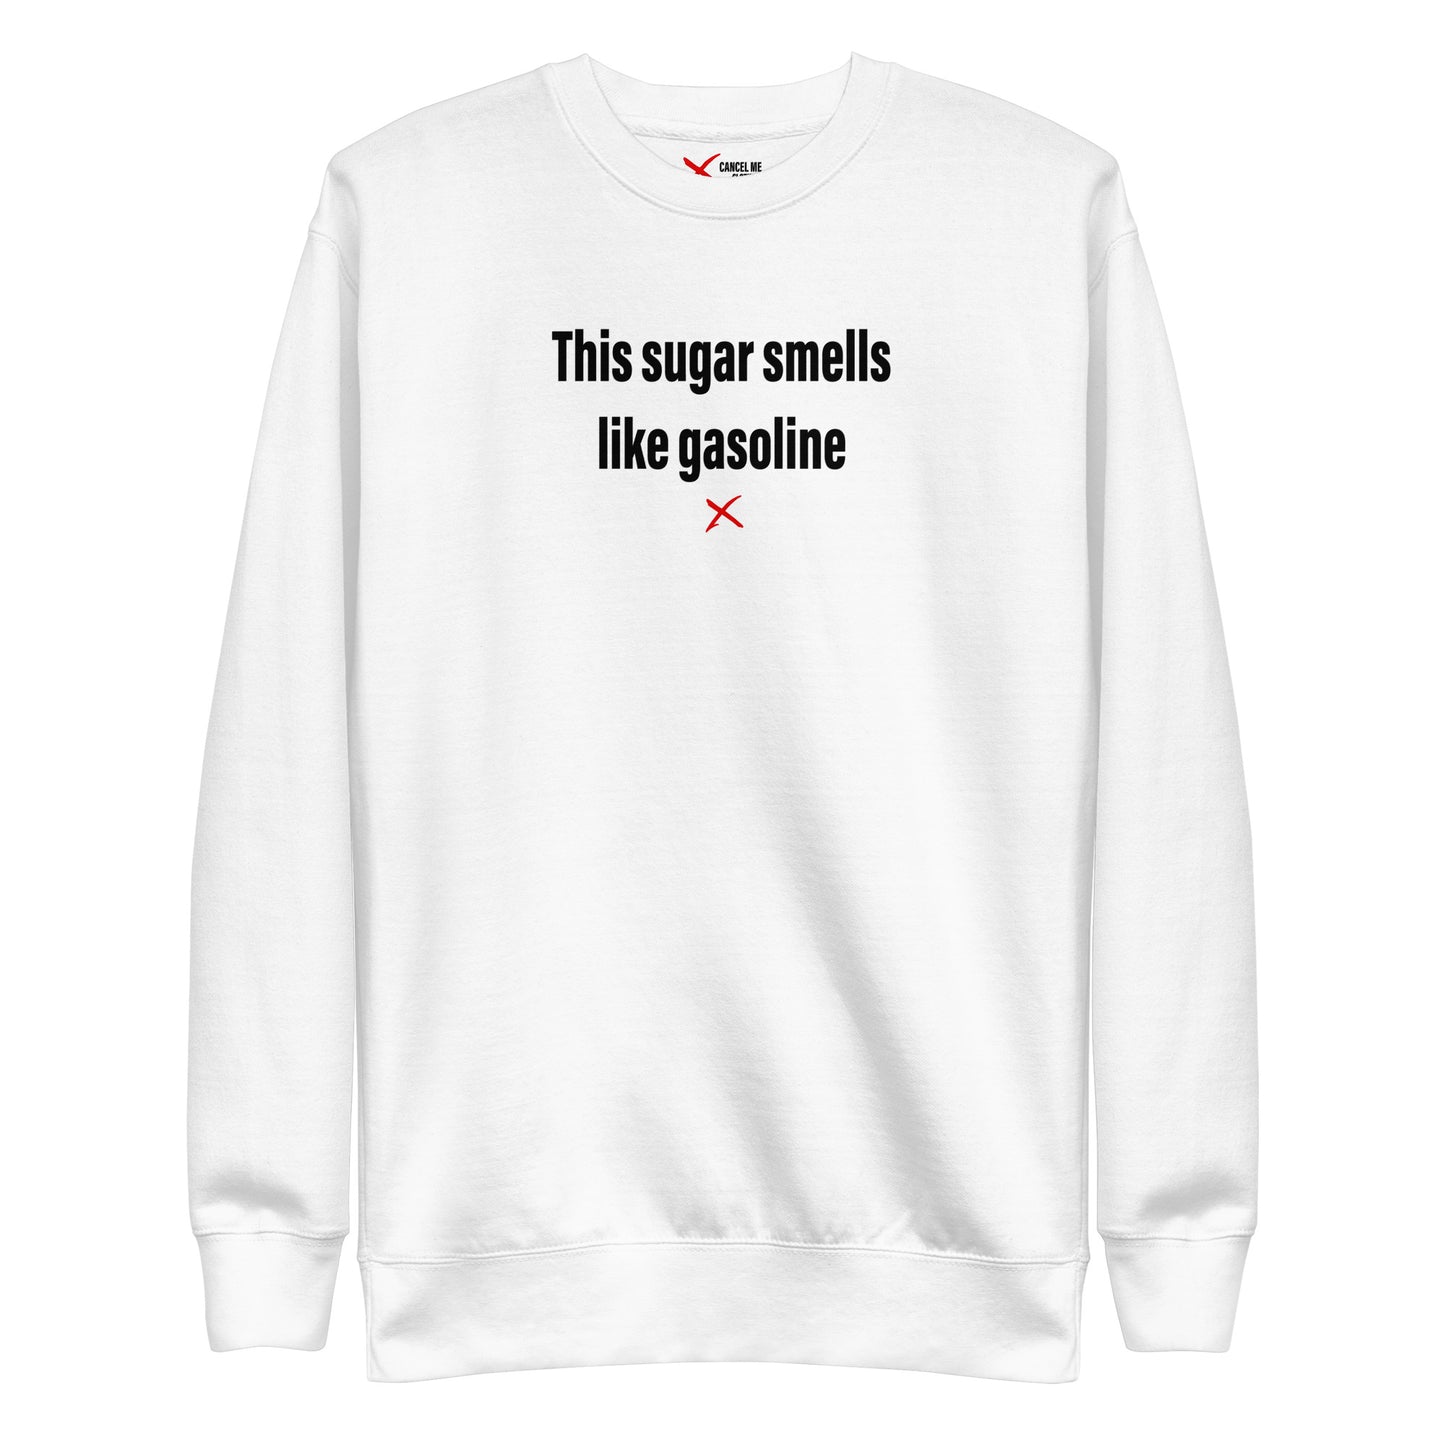 This sugar smells like gasoline - Sweatshirt